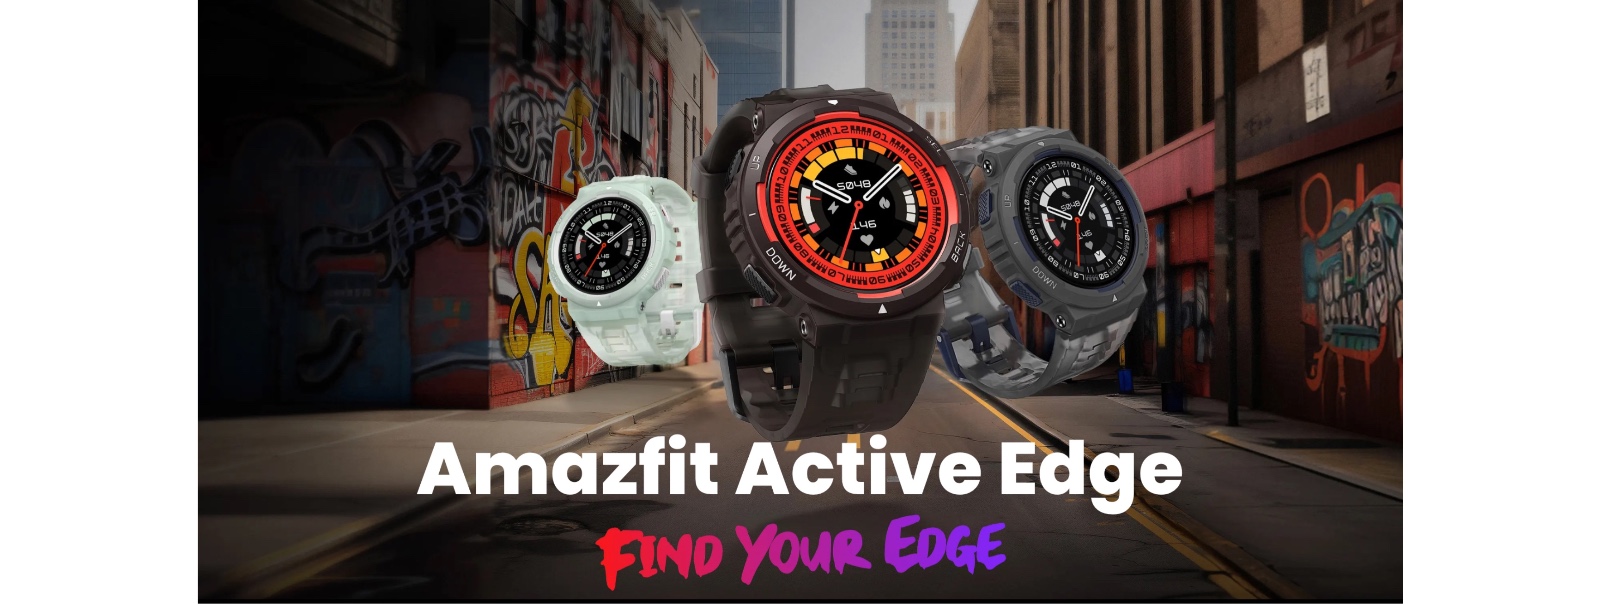 Gabungkan desain kokoh dan fitur sporty, ini dia tampilan smartwatch Amazfit Active Edge